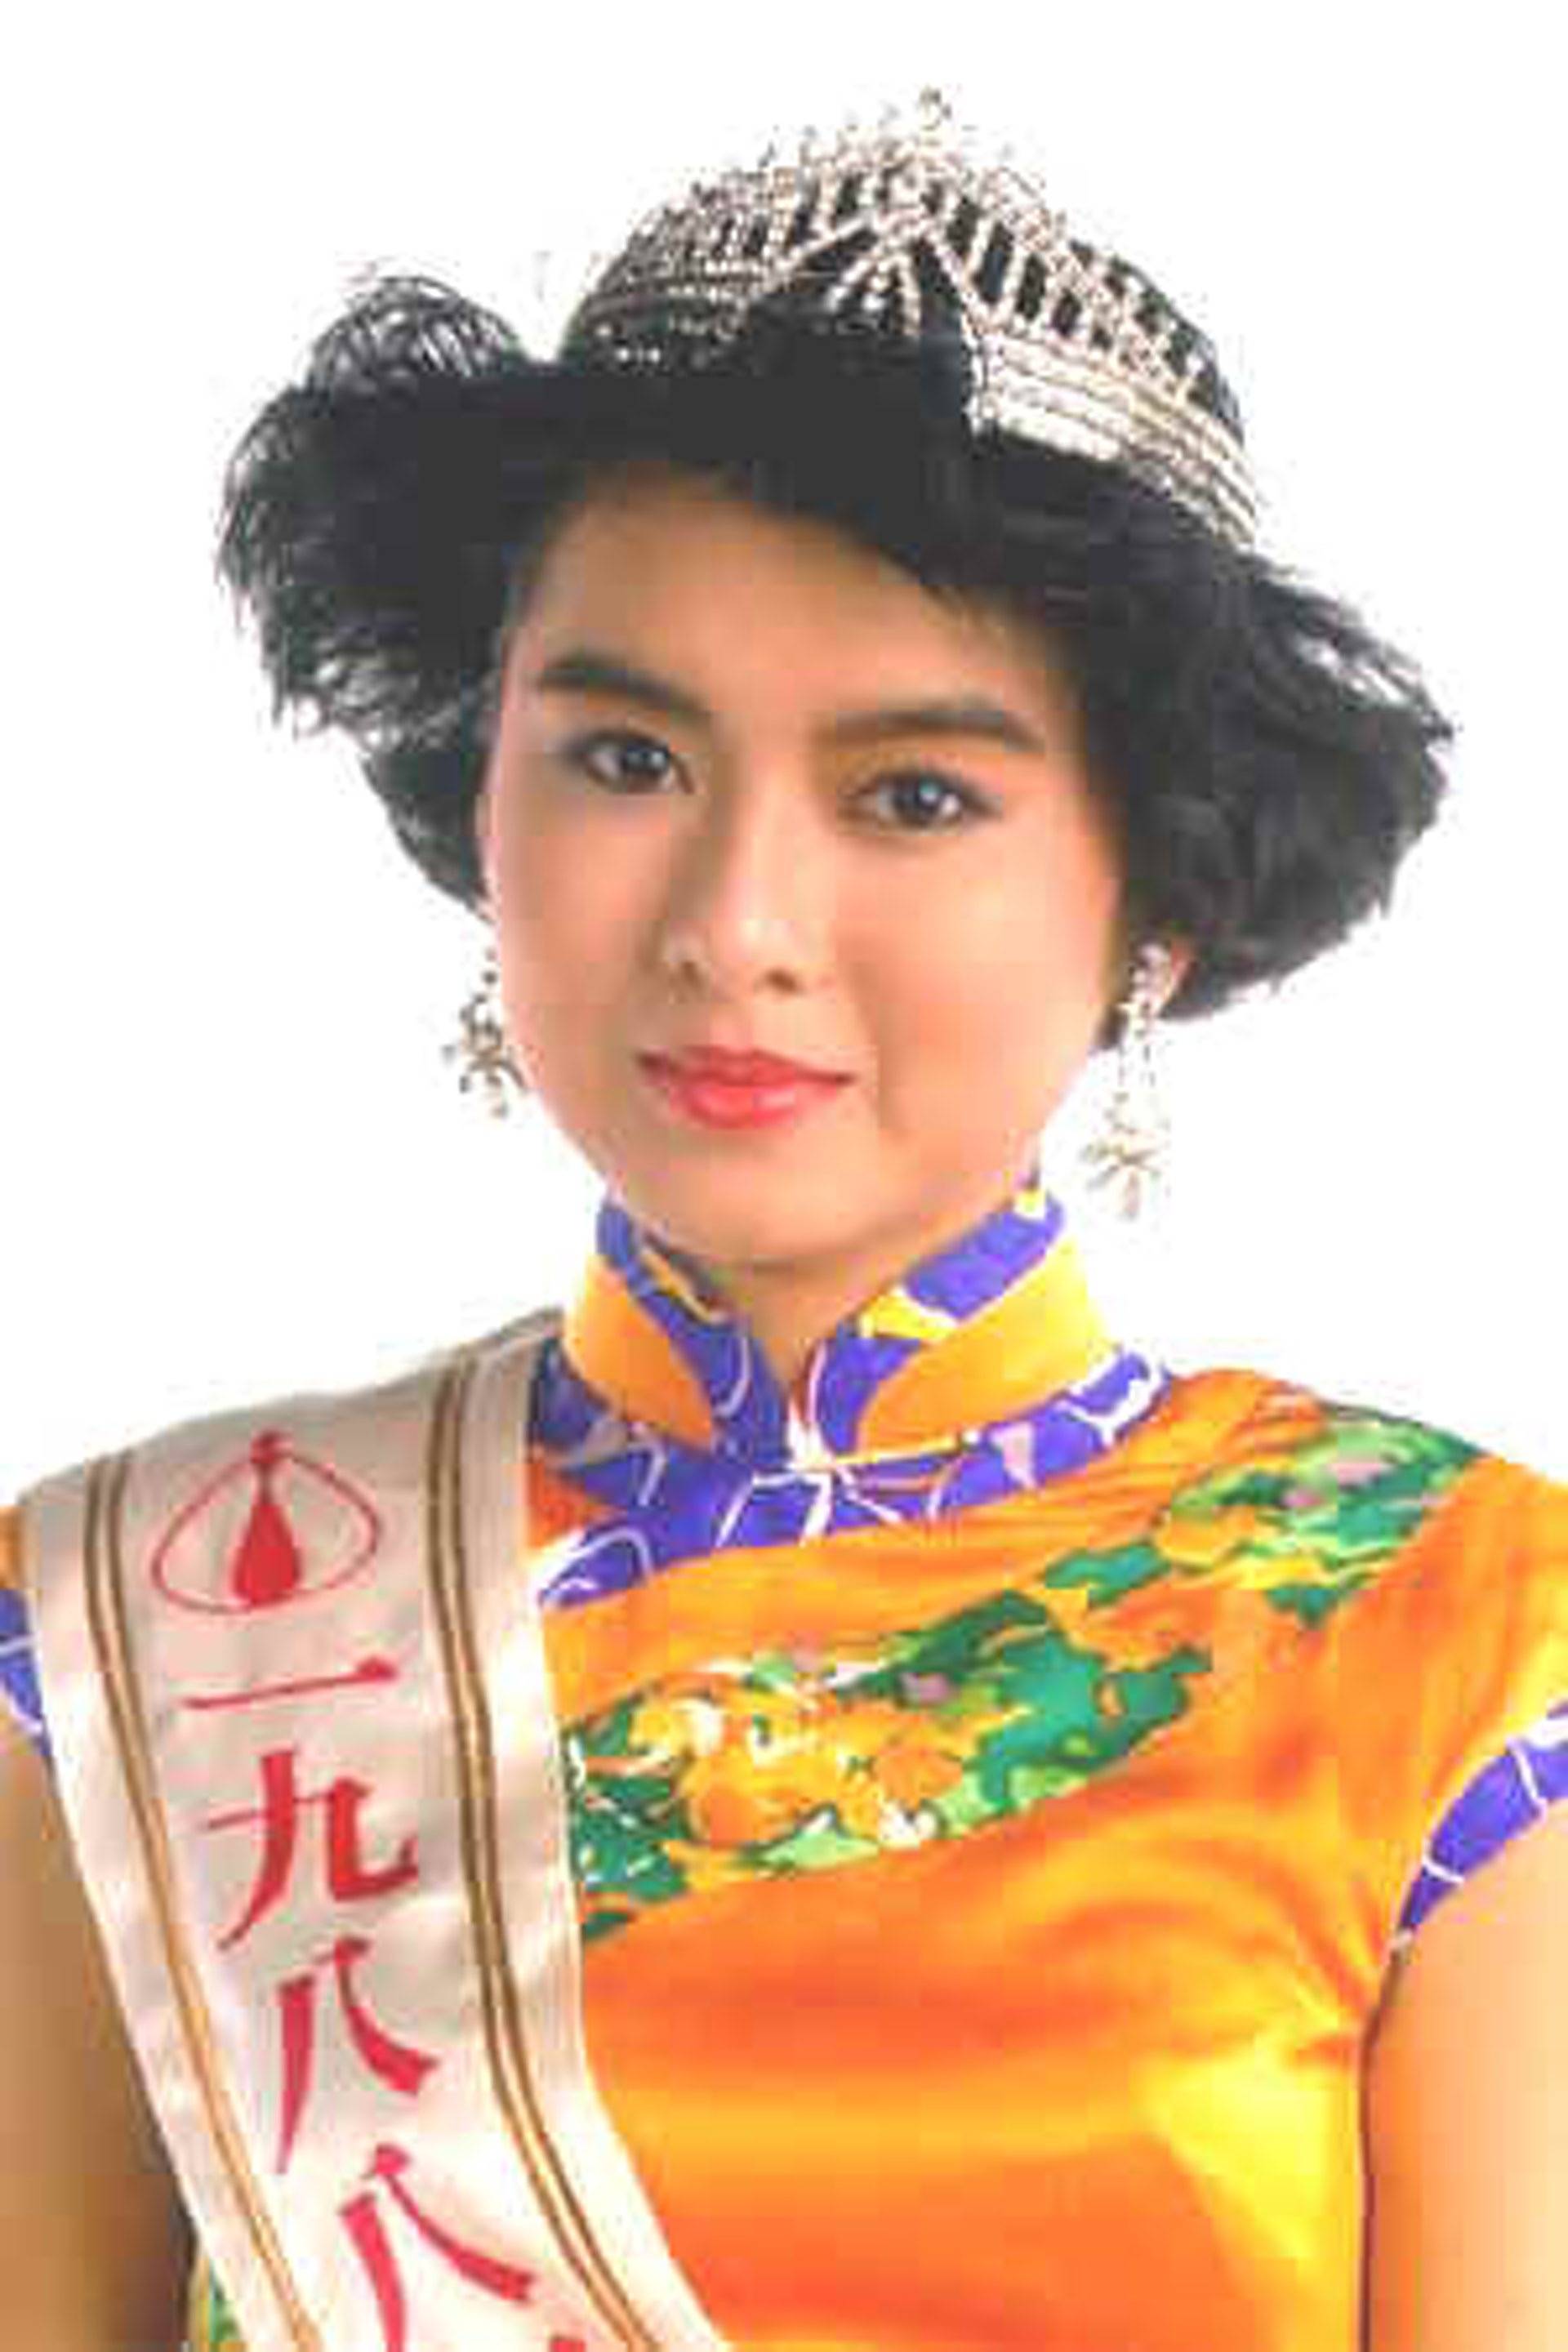 今年51岁的知名港姐陈淑兰,是当年1988年tvb香港小姐竞选的亚军